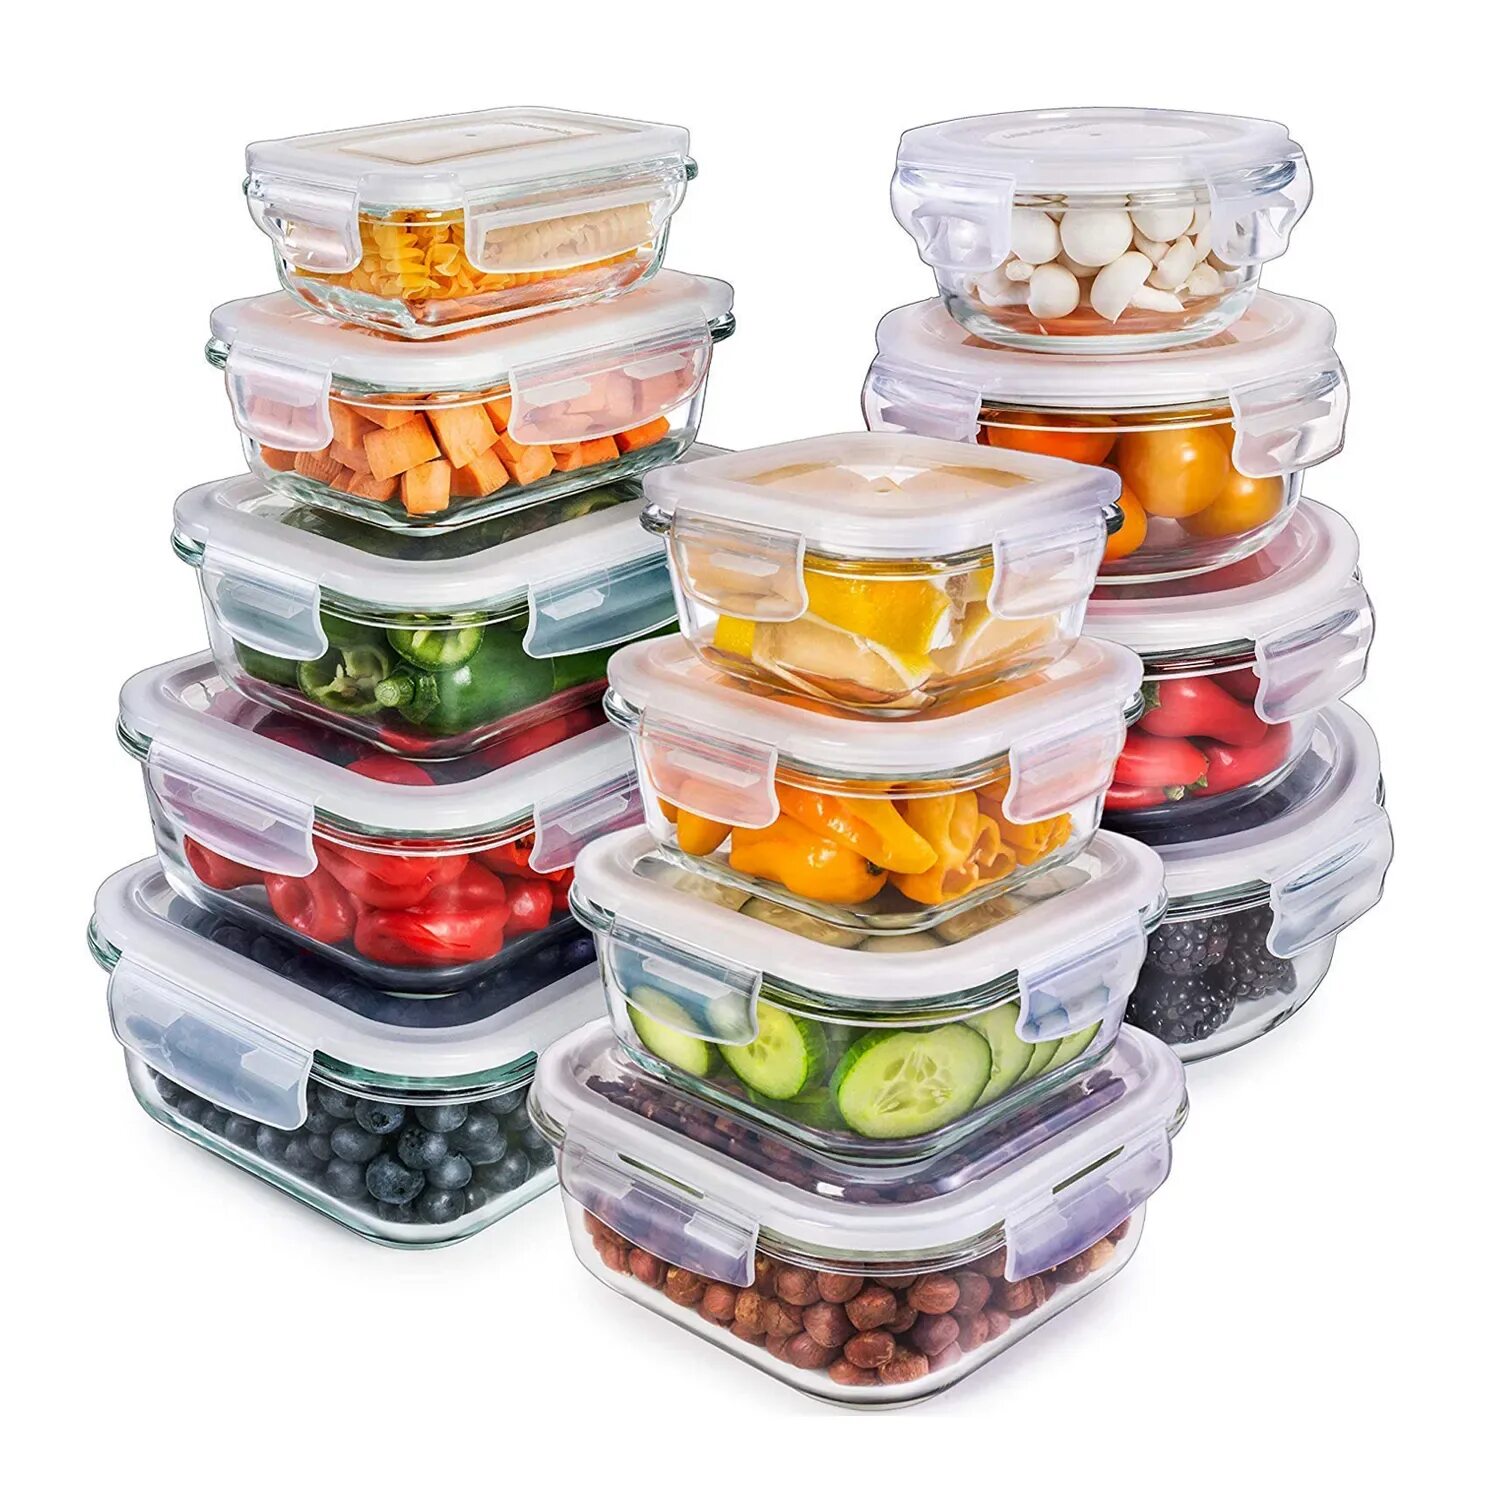 Тапперваре контейнеры для еды. Контейнер Tupperware контейнер пищевой. Набор стеклянных контейнеров, 10 предметов [CL-7020pk]. Контейнер Premium Glass тапперваре.